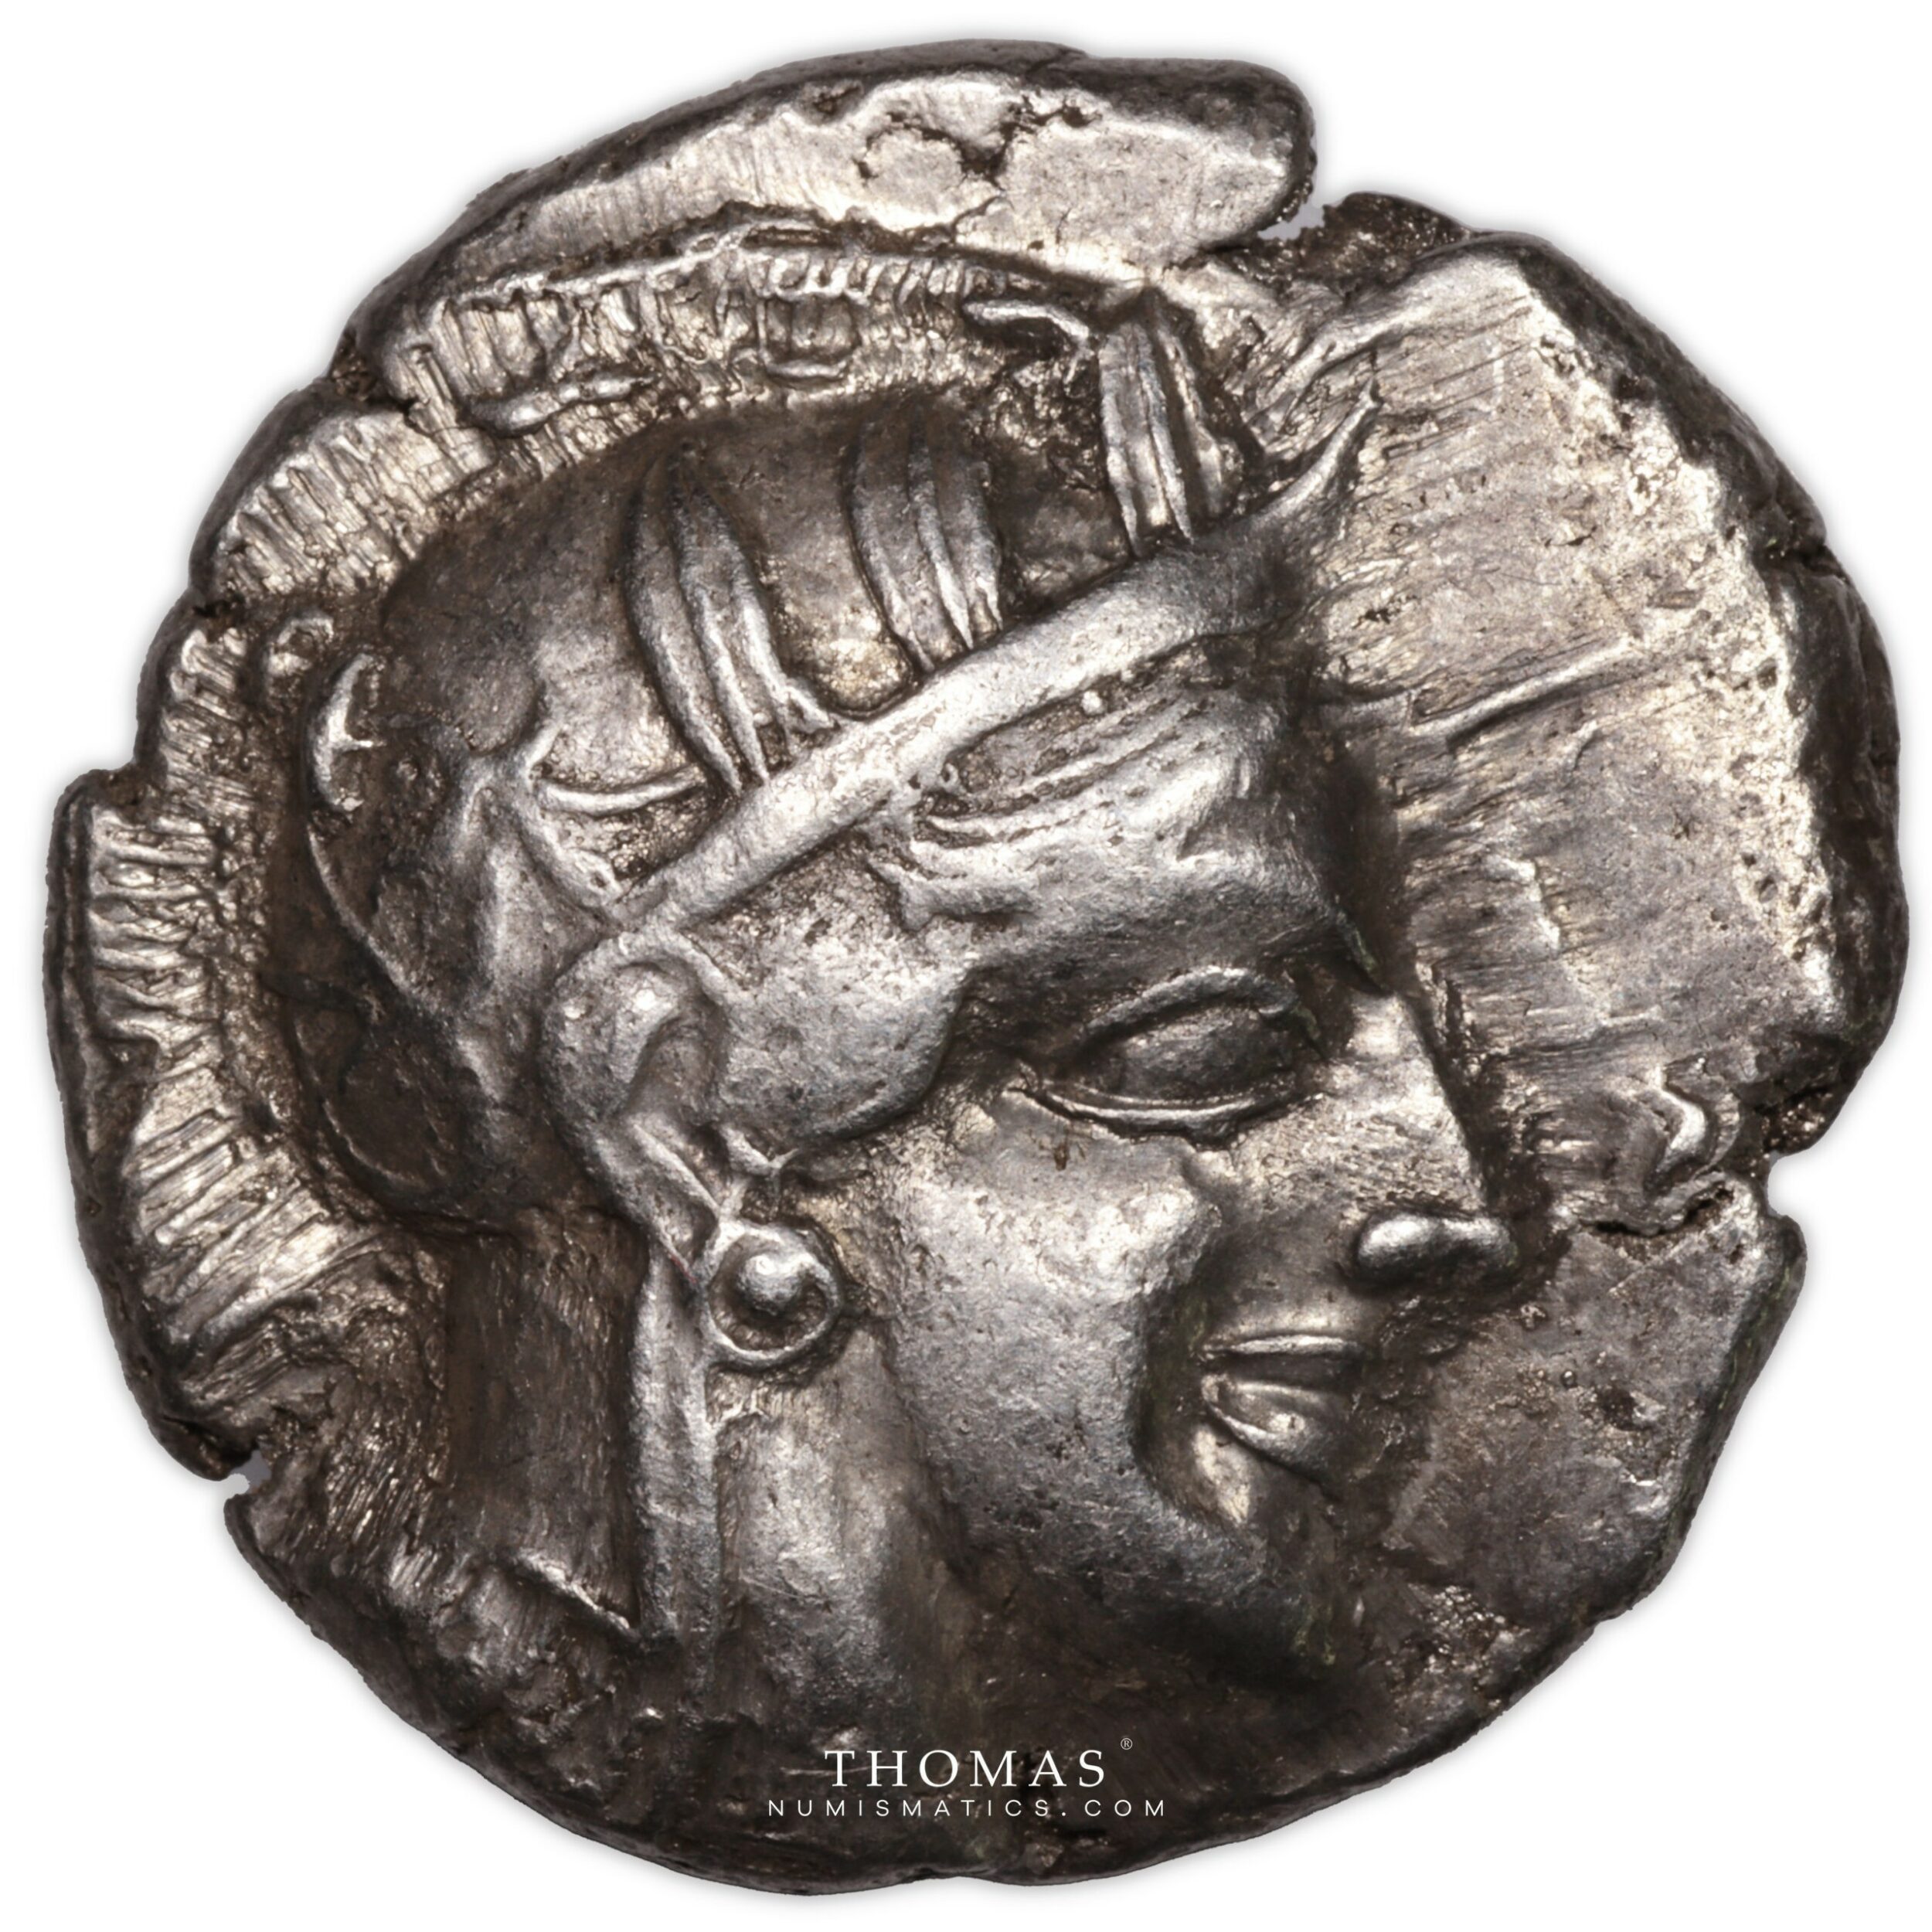 Monnaie - Grèce Attique - Chouette Athènes - Tétradrachme - HGC 4, 1597. -  Thomas Numismatics